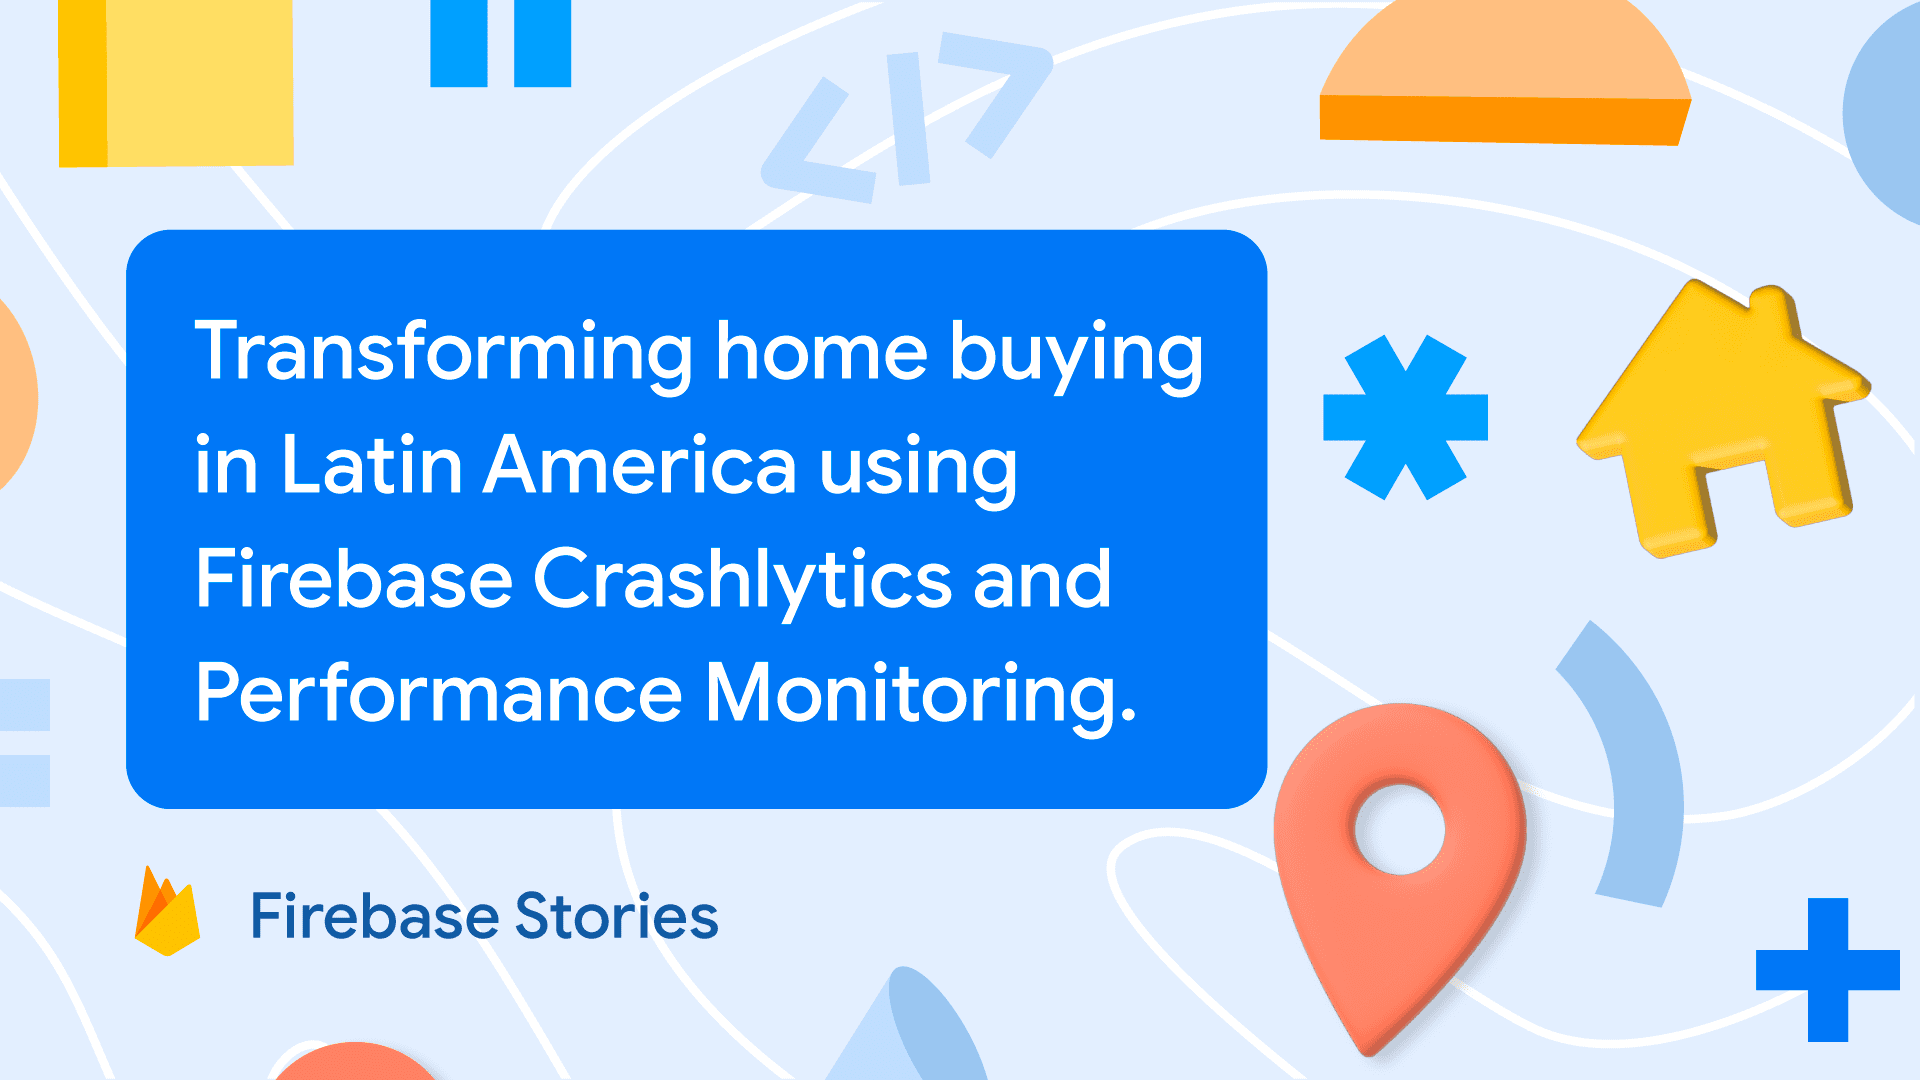 LaHaus: Firebase Crashlytics と Performance Monitoring を使用して、ラテンアメリカでの住宅購入を変革
